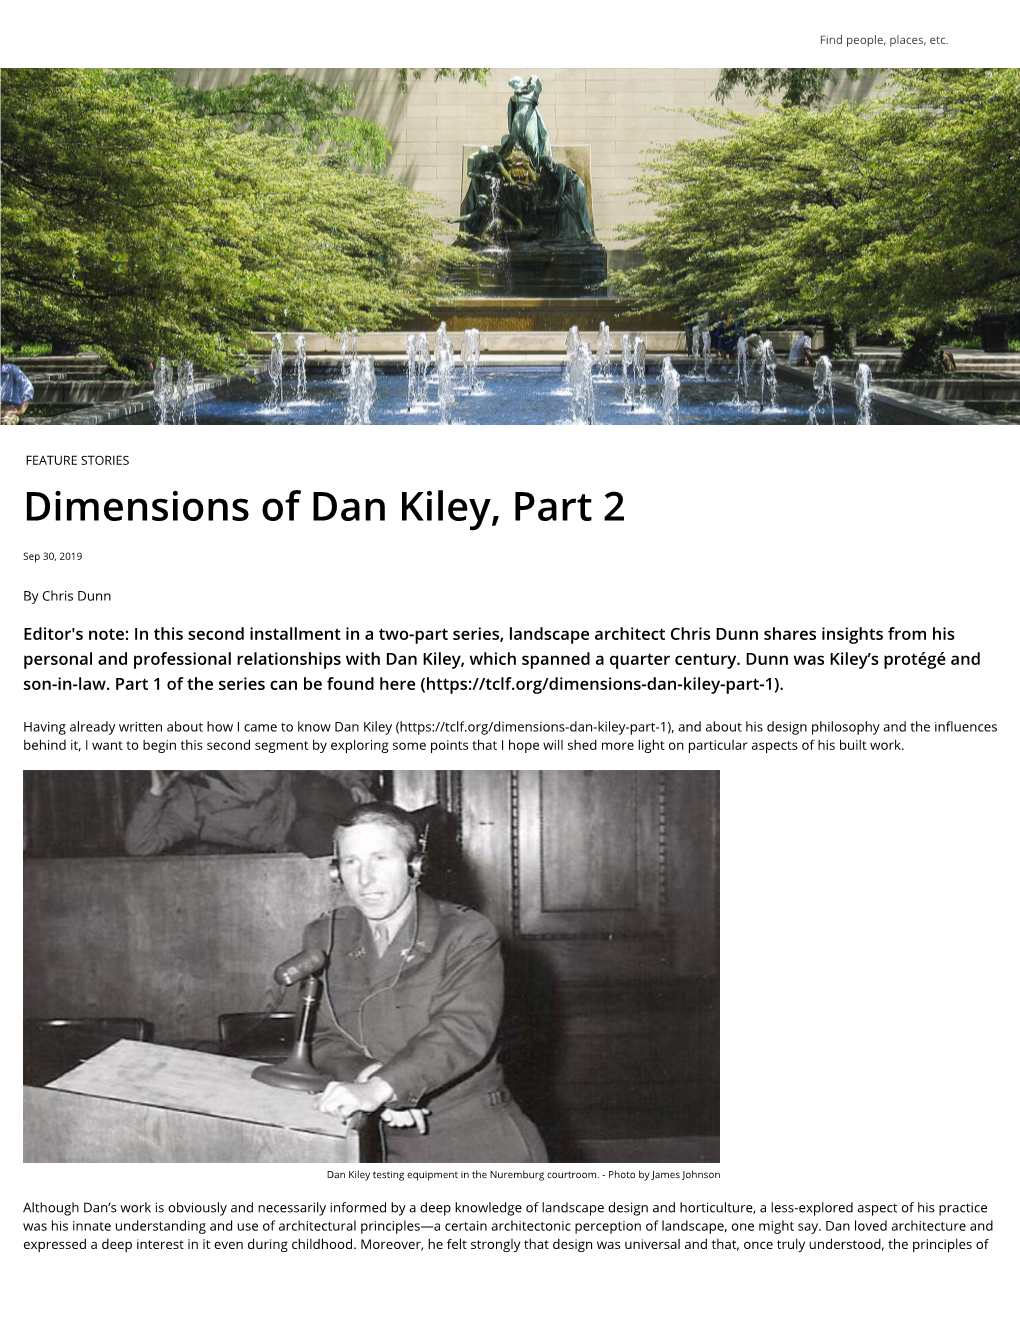 Dimensions of Dan Kiley, Part 2